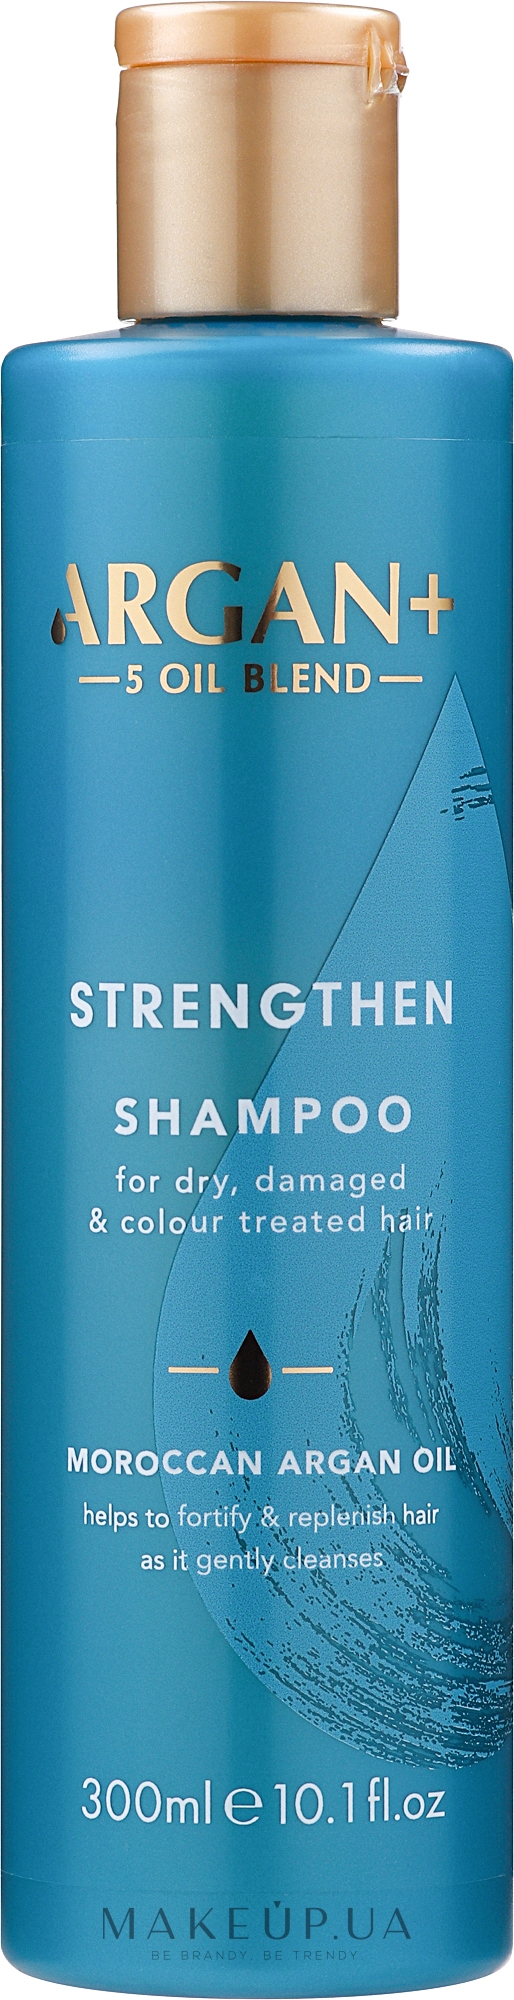 Шампунь для сухих, поврежденных и окрашенных волос - Argan+ Strengthen Shampoo Moroccan Argan Oil — фото 300ml